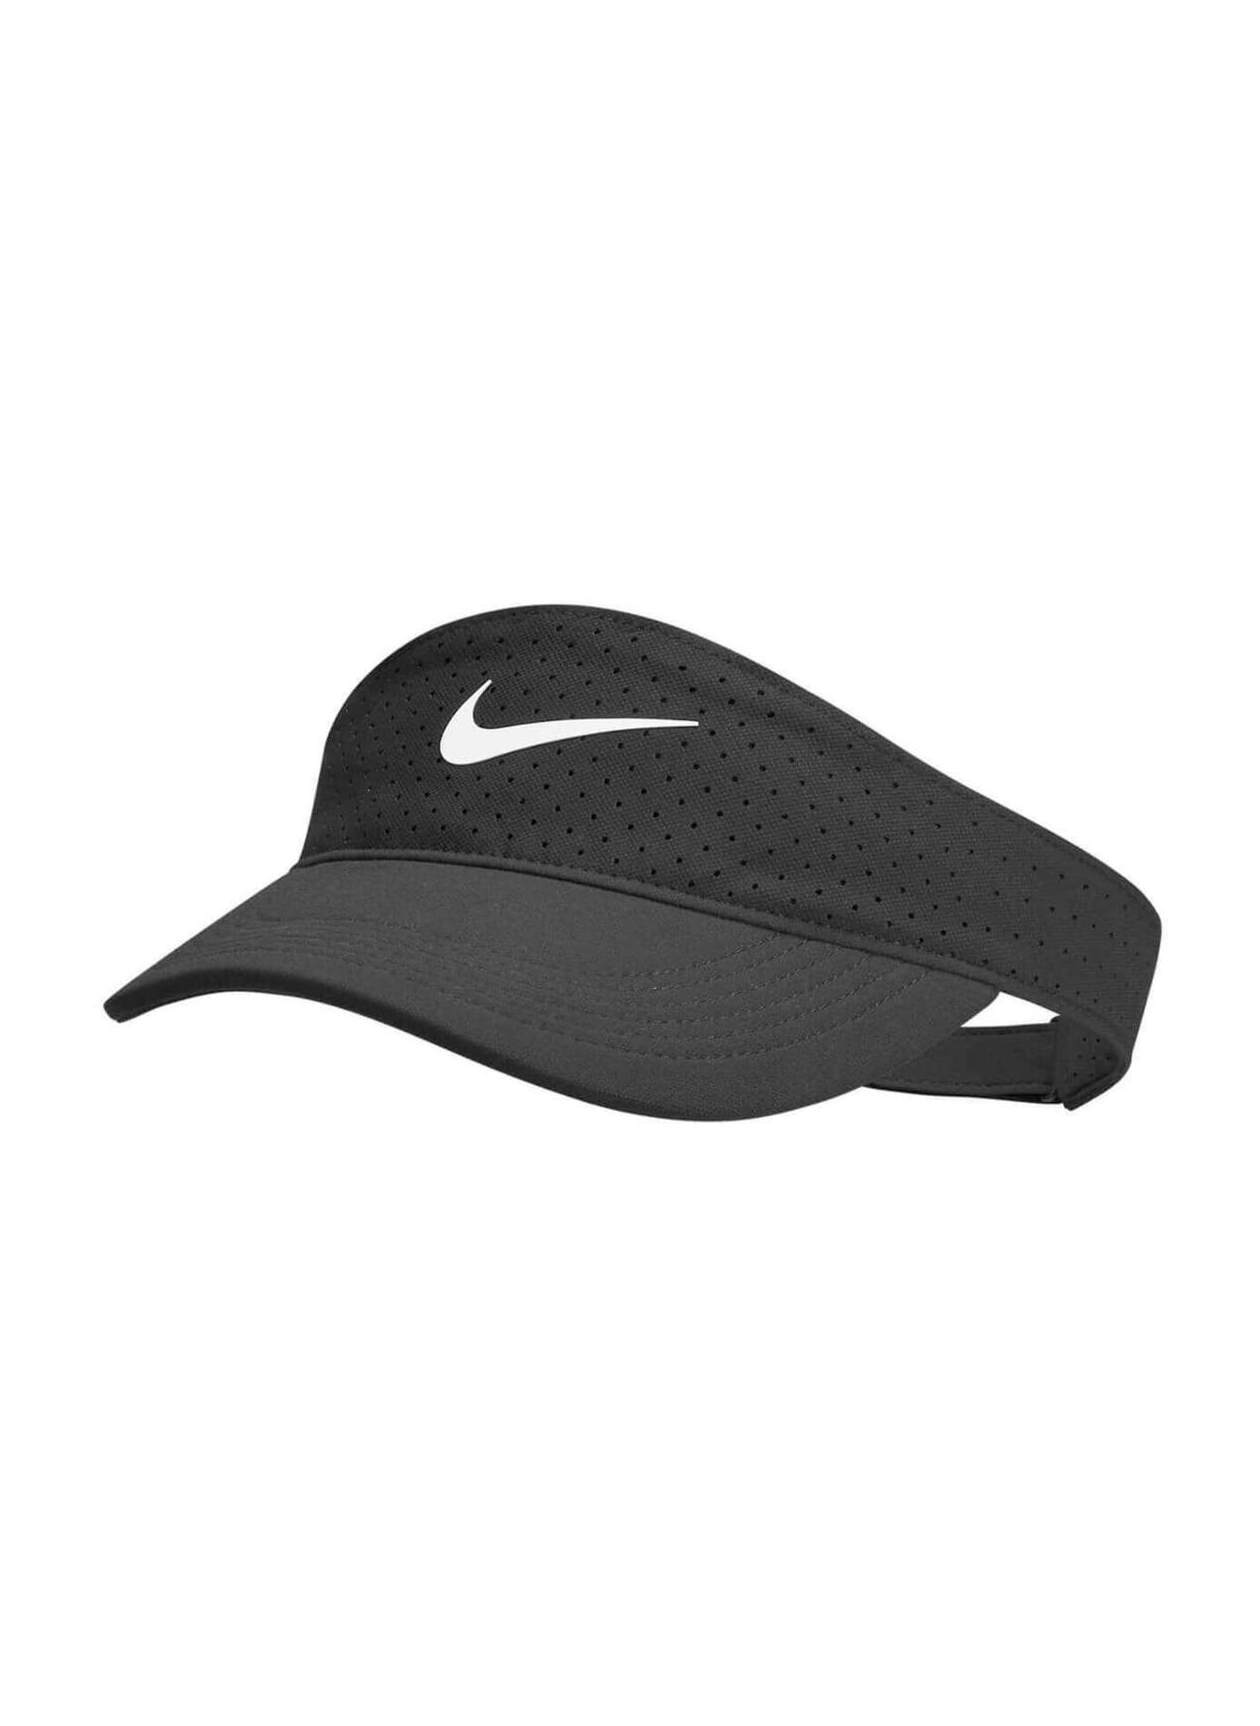 Nike Black / White Dri-FIT AeroBill Visor